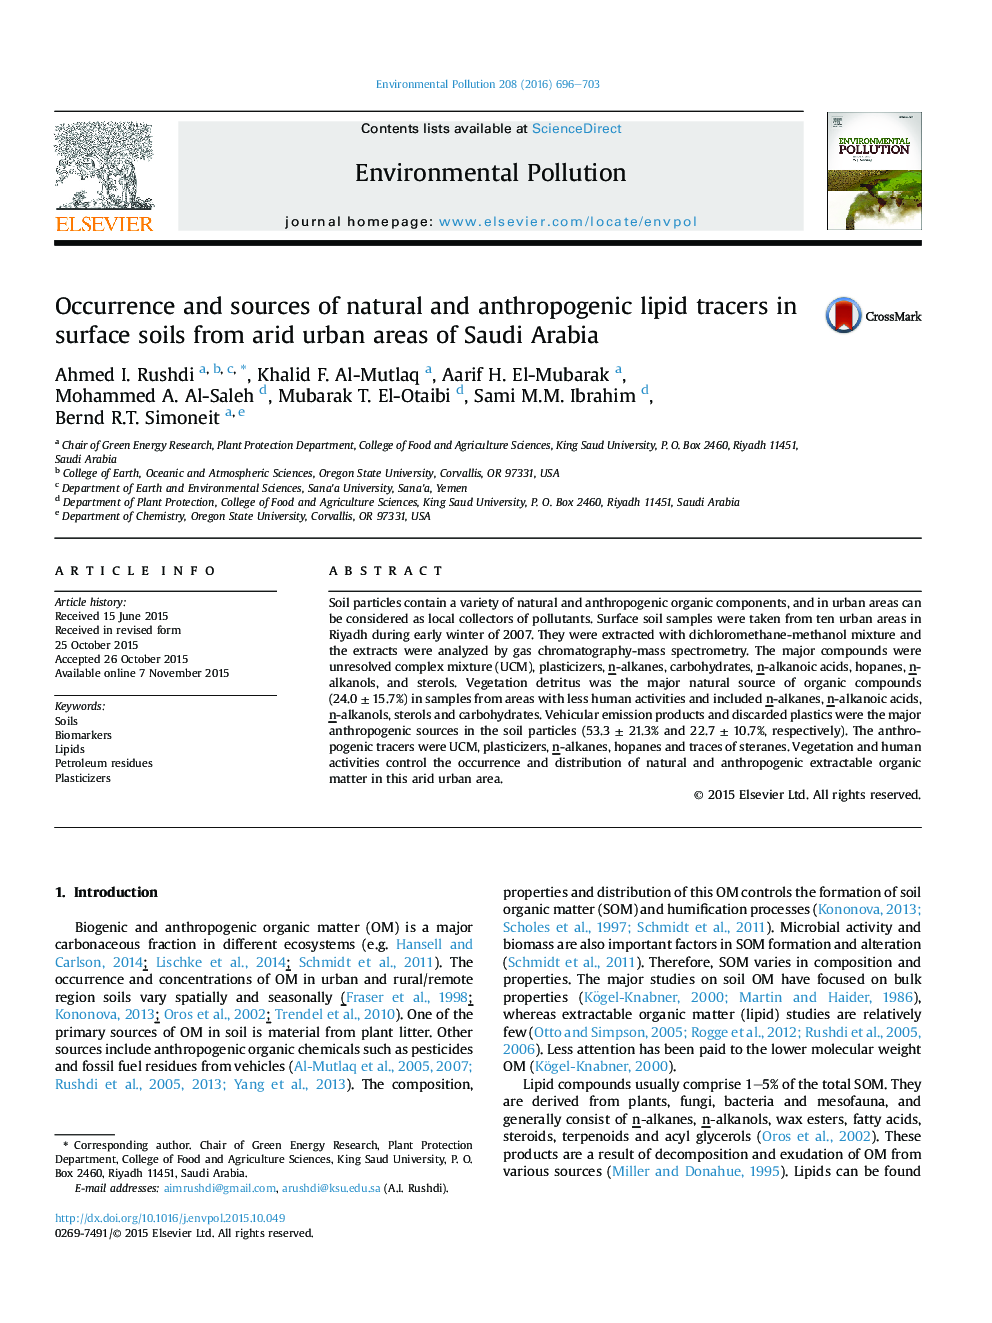 پیدایش و منابع طبیعی ریشه دار و چربی های انسانی در خاک های سطحی از مناطق خشک شهری عربستان سعودی 